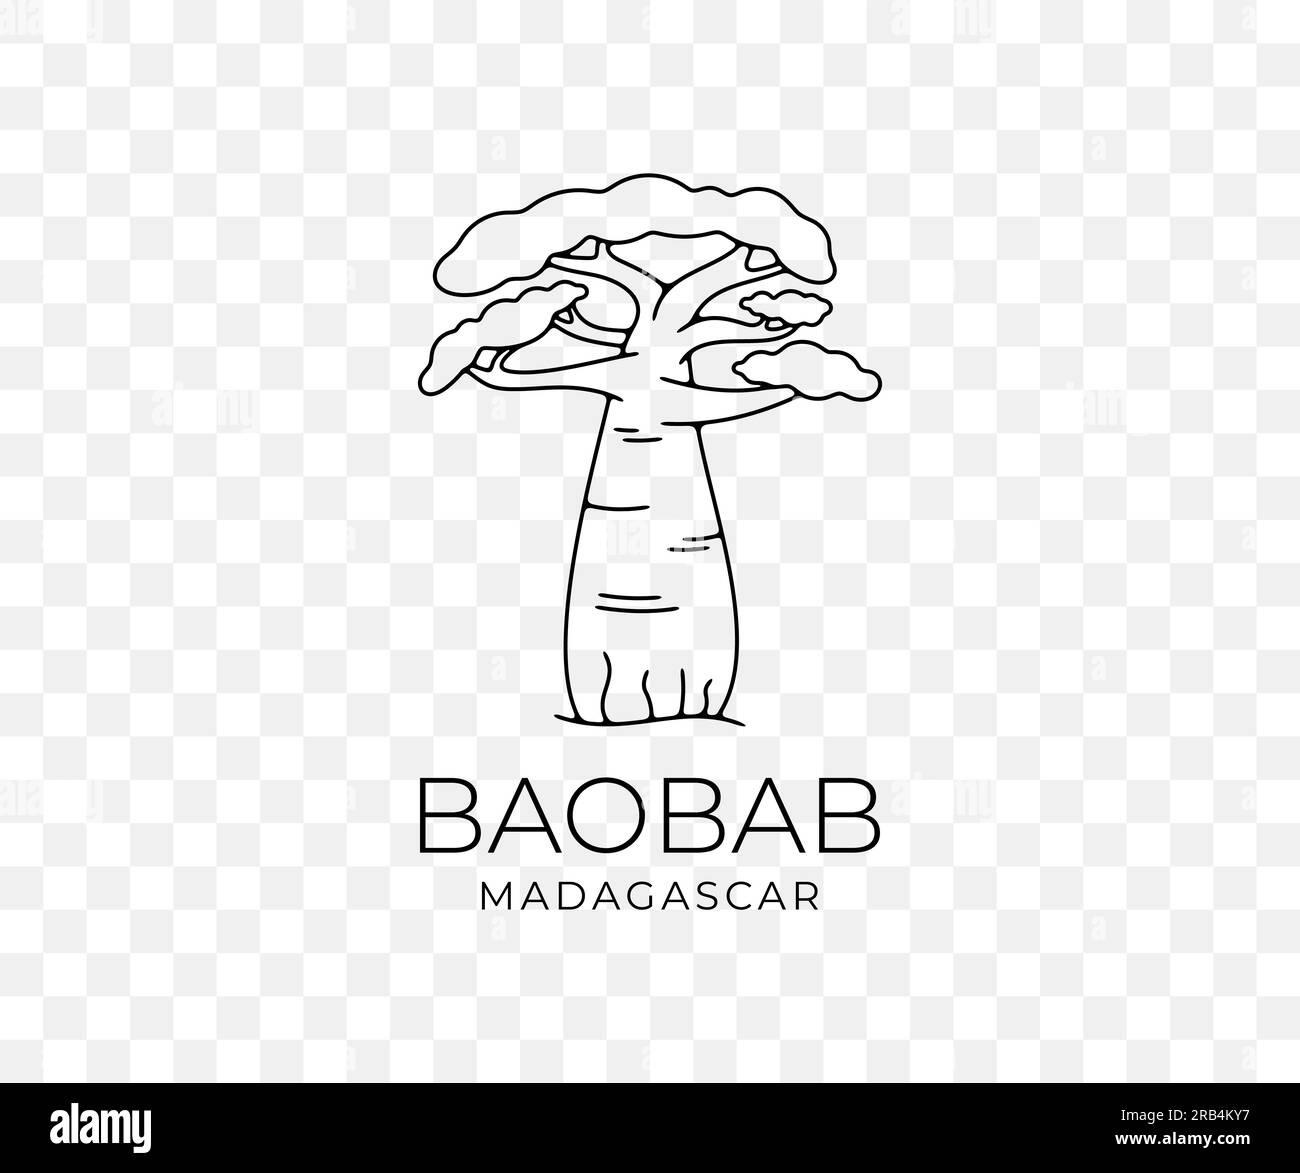 Madagascar baobab africain, parc national et savane, nature, arbres et plantes, graphisme linéaire. Forêt, savane, flore, paysage Illustration de Vecteur